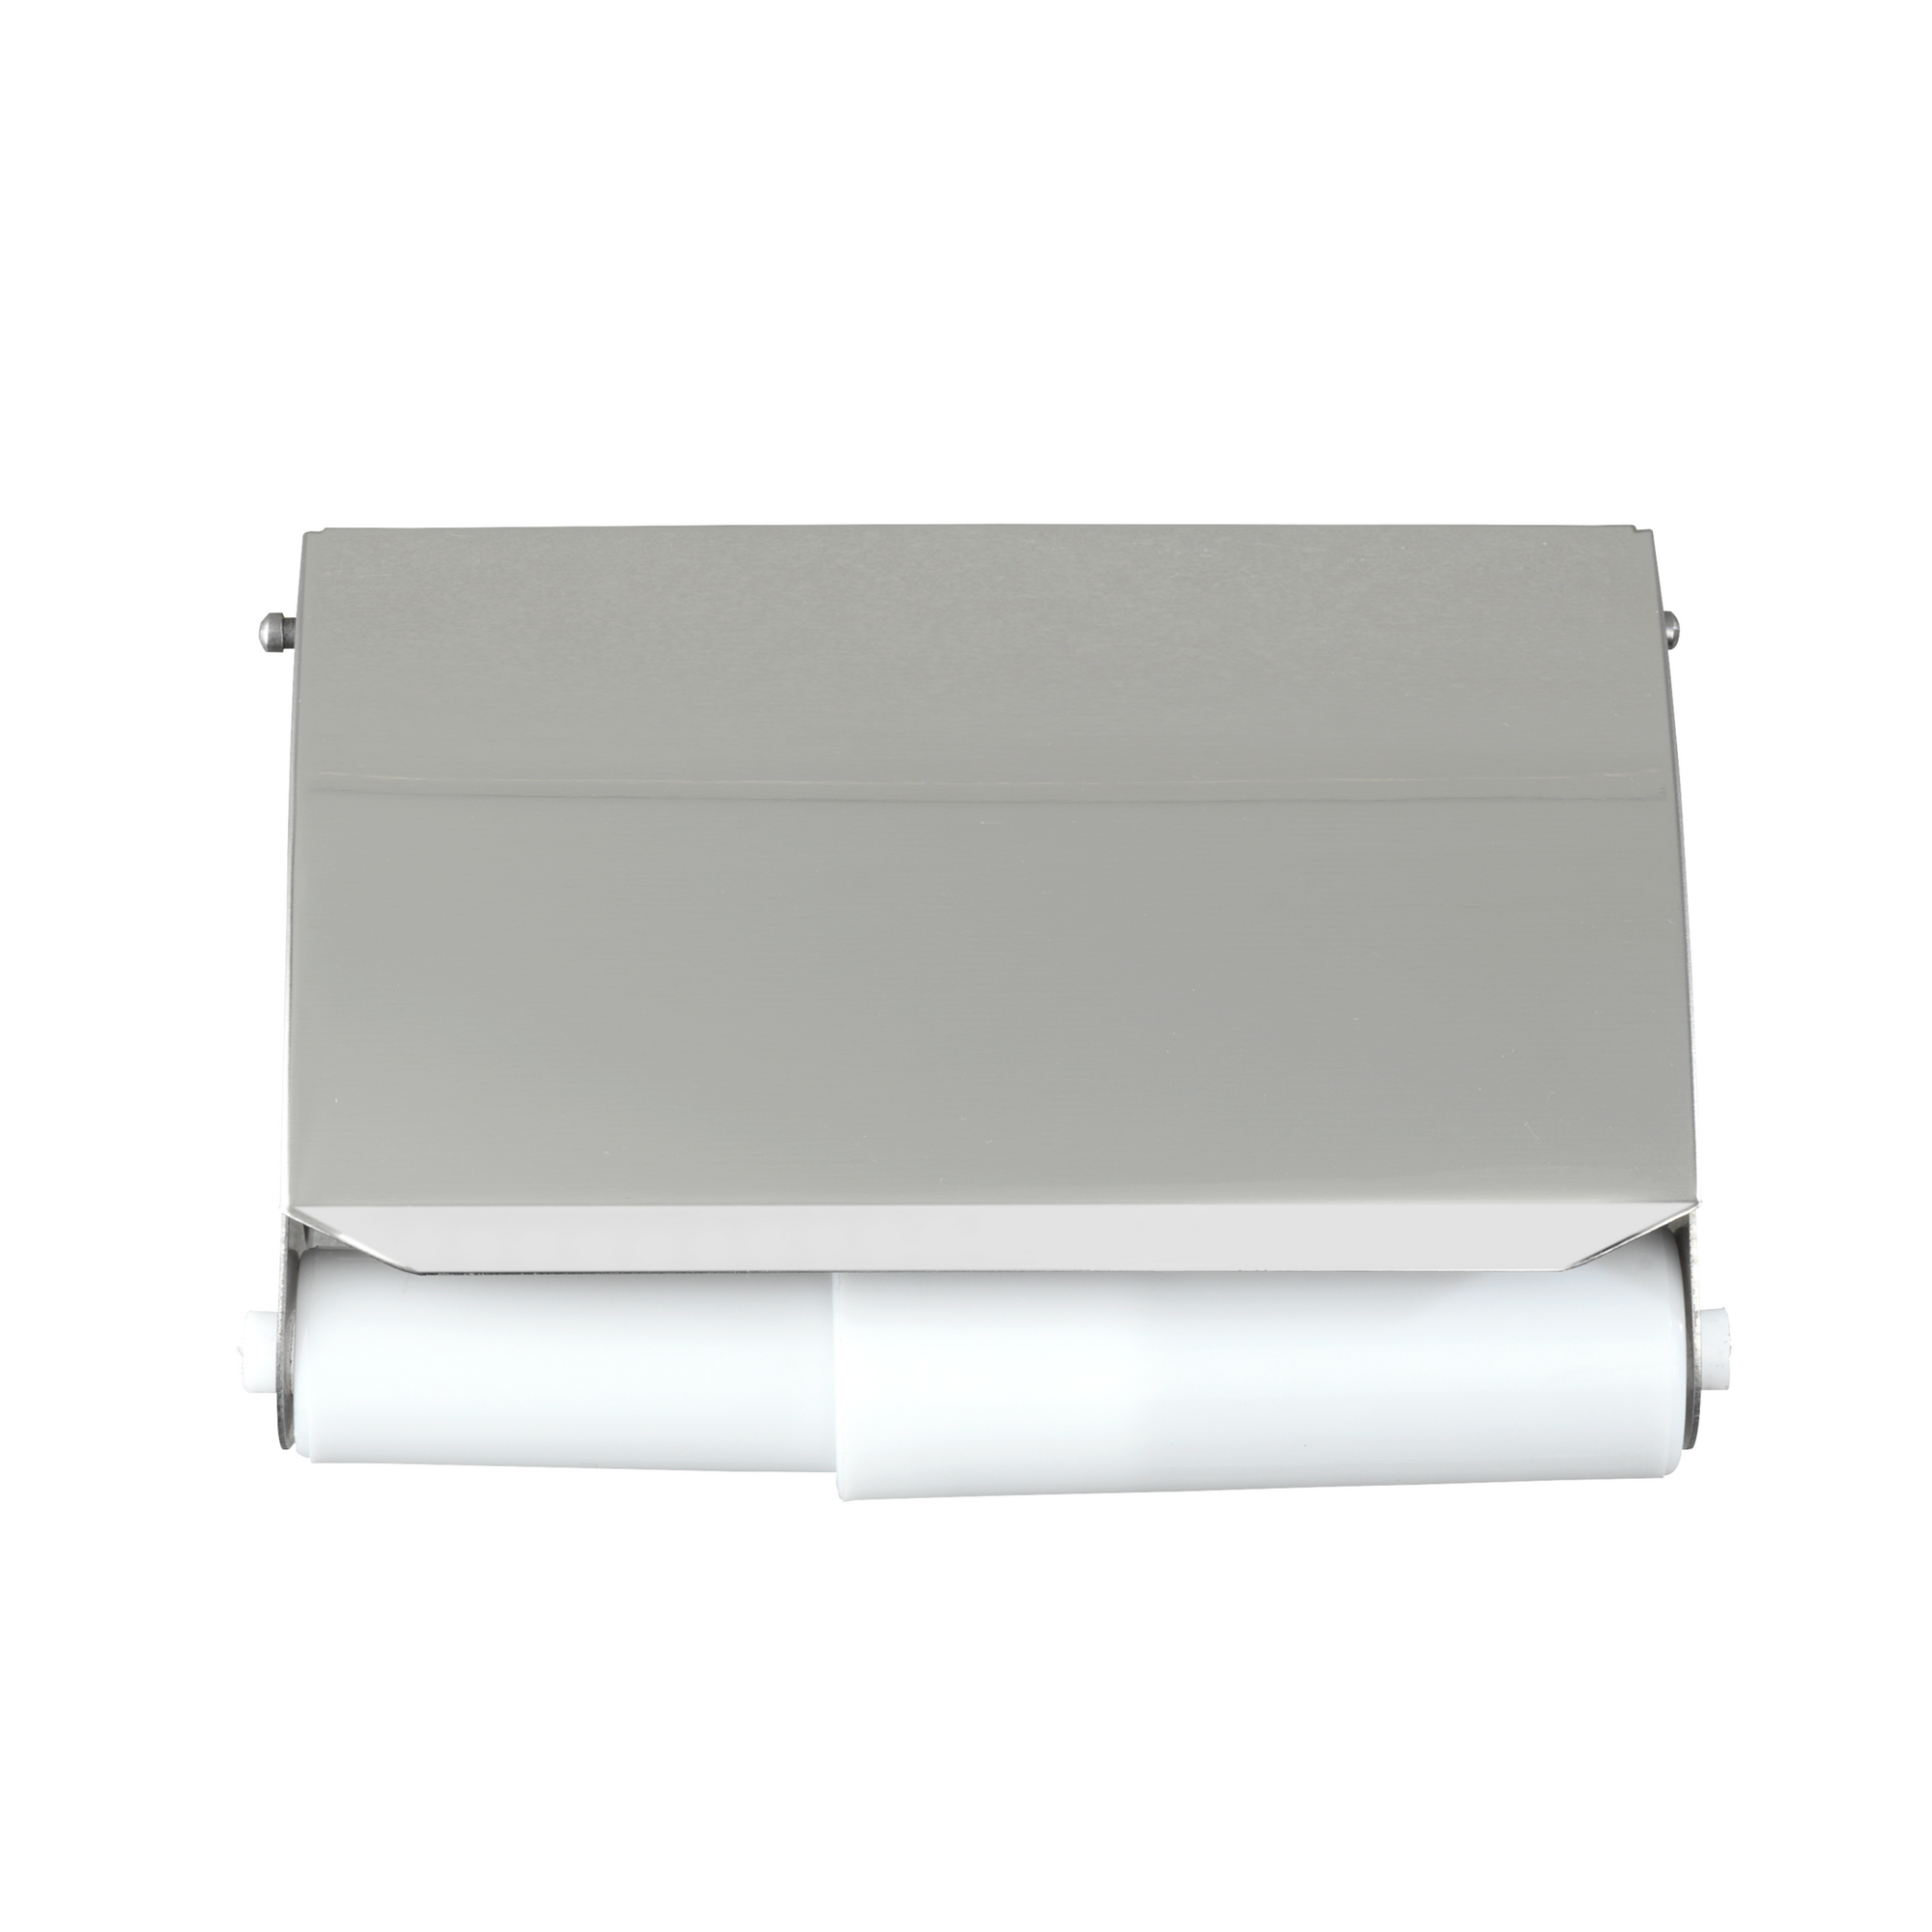 Toilettenpapierhalter 'Basic' Edelstahl rostfrei, mit Deckel + product picture